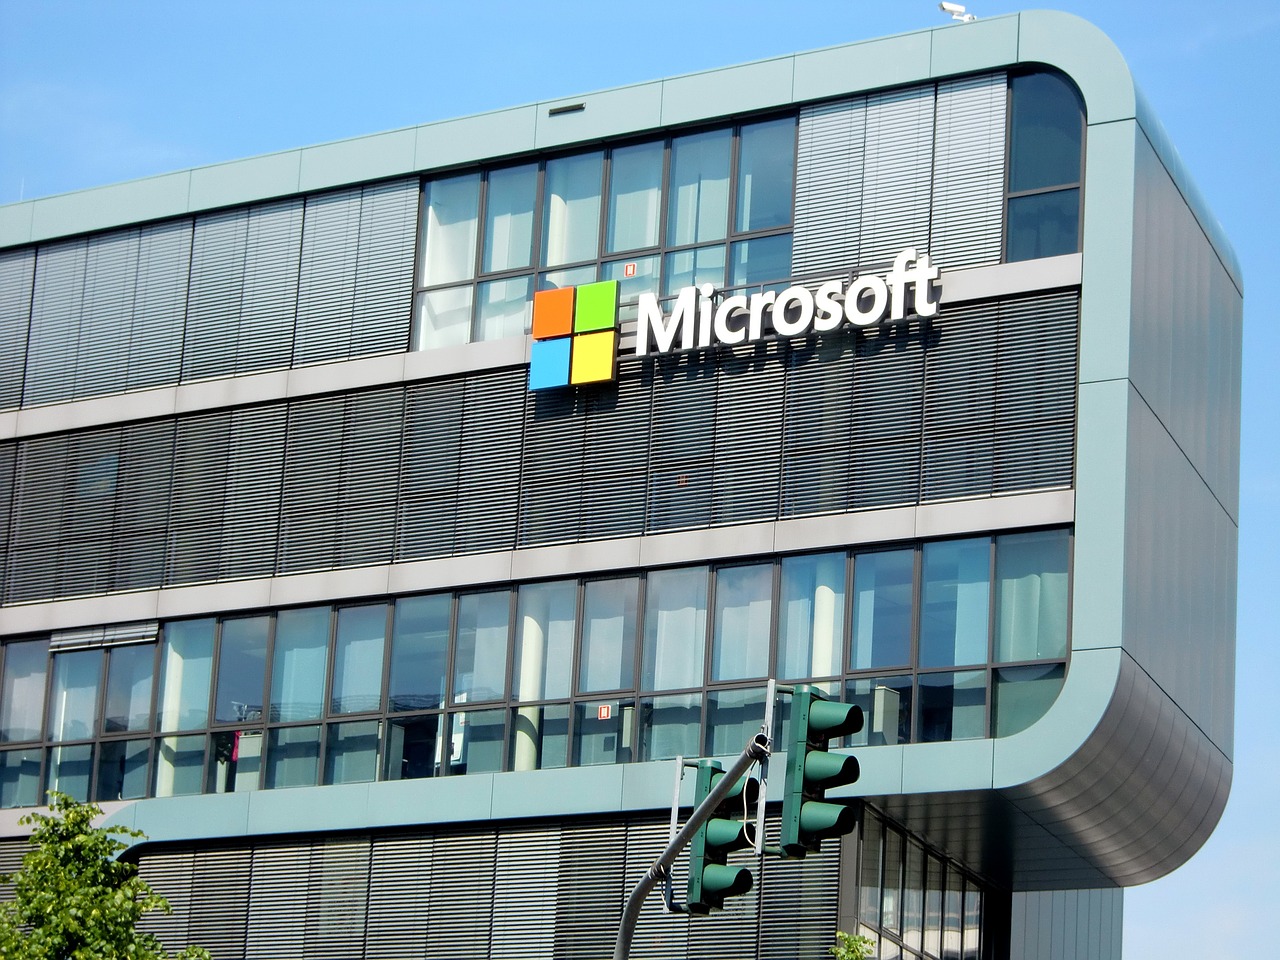 Microsoft to trim workforce by 10,000 amid economic slowdown